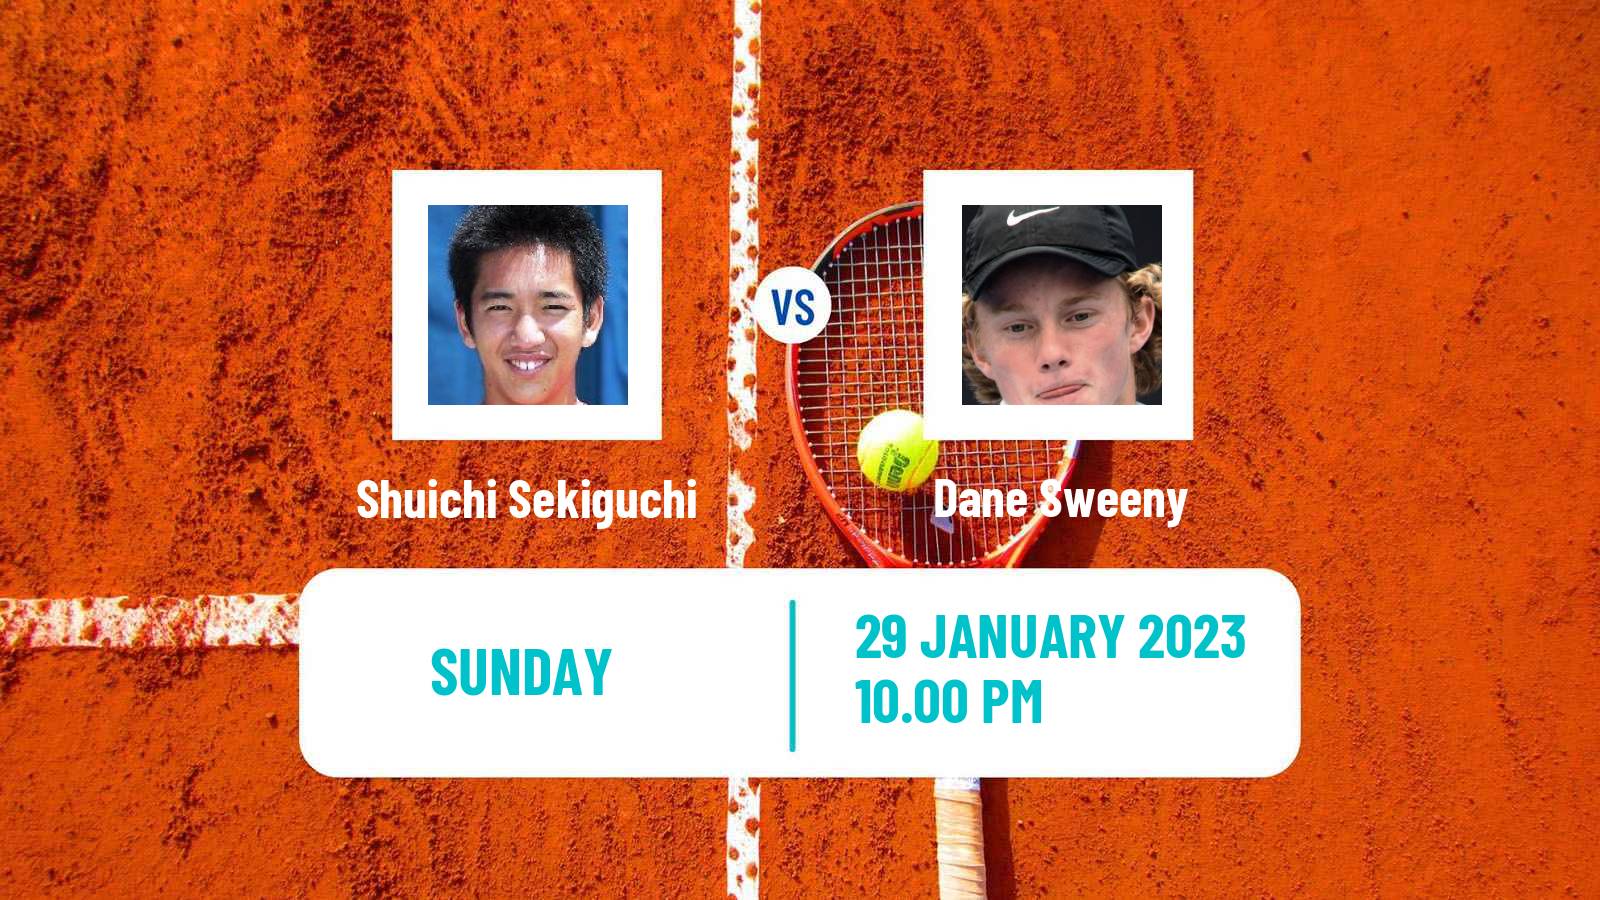 Tennis ATP Challenger Shuichi Sekiguchi - Dane Sweeny